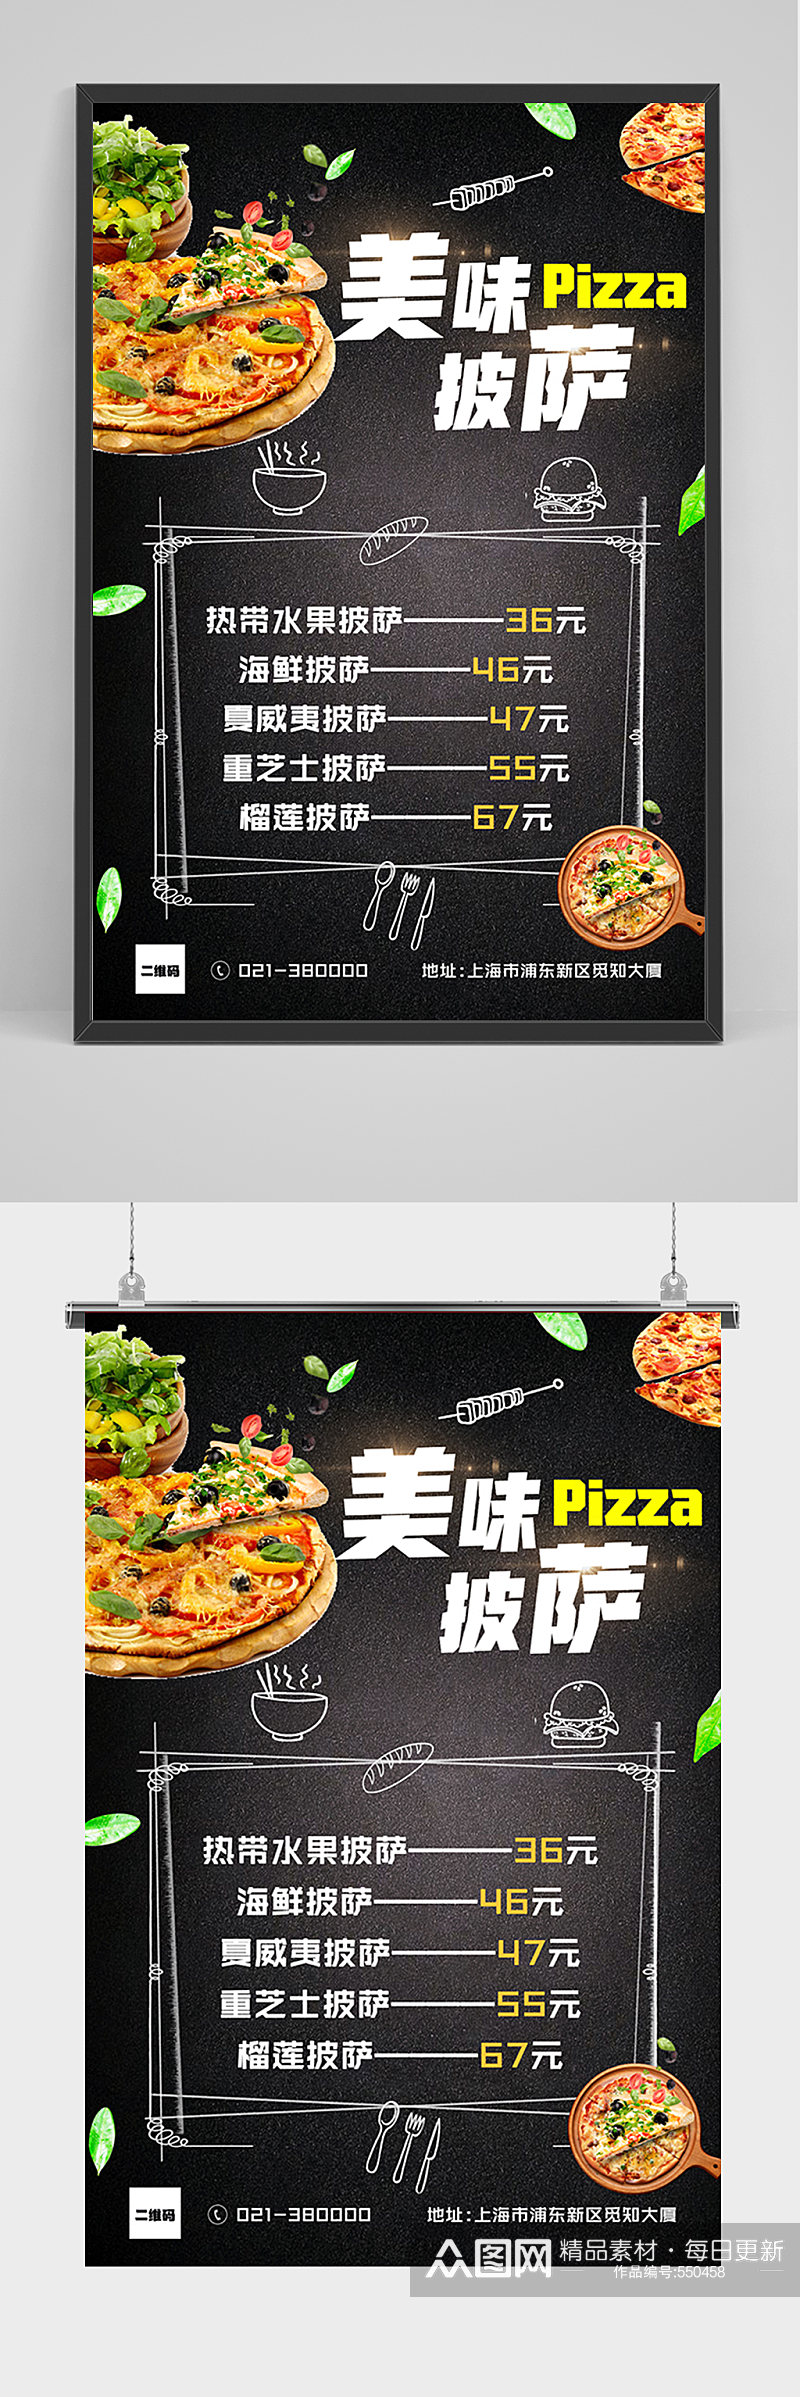 美味披萨价格表海报素材